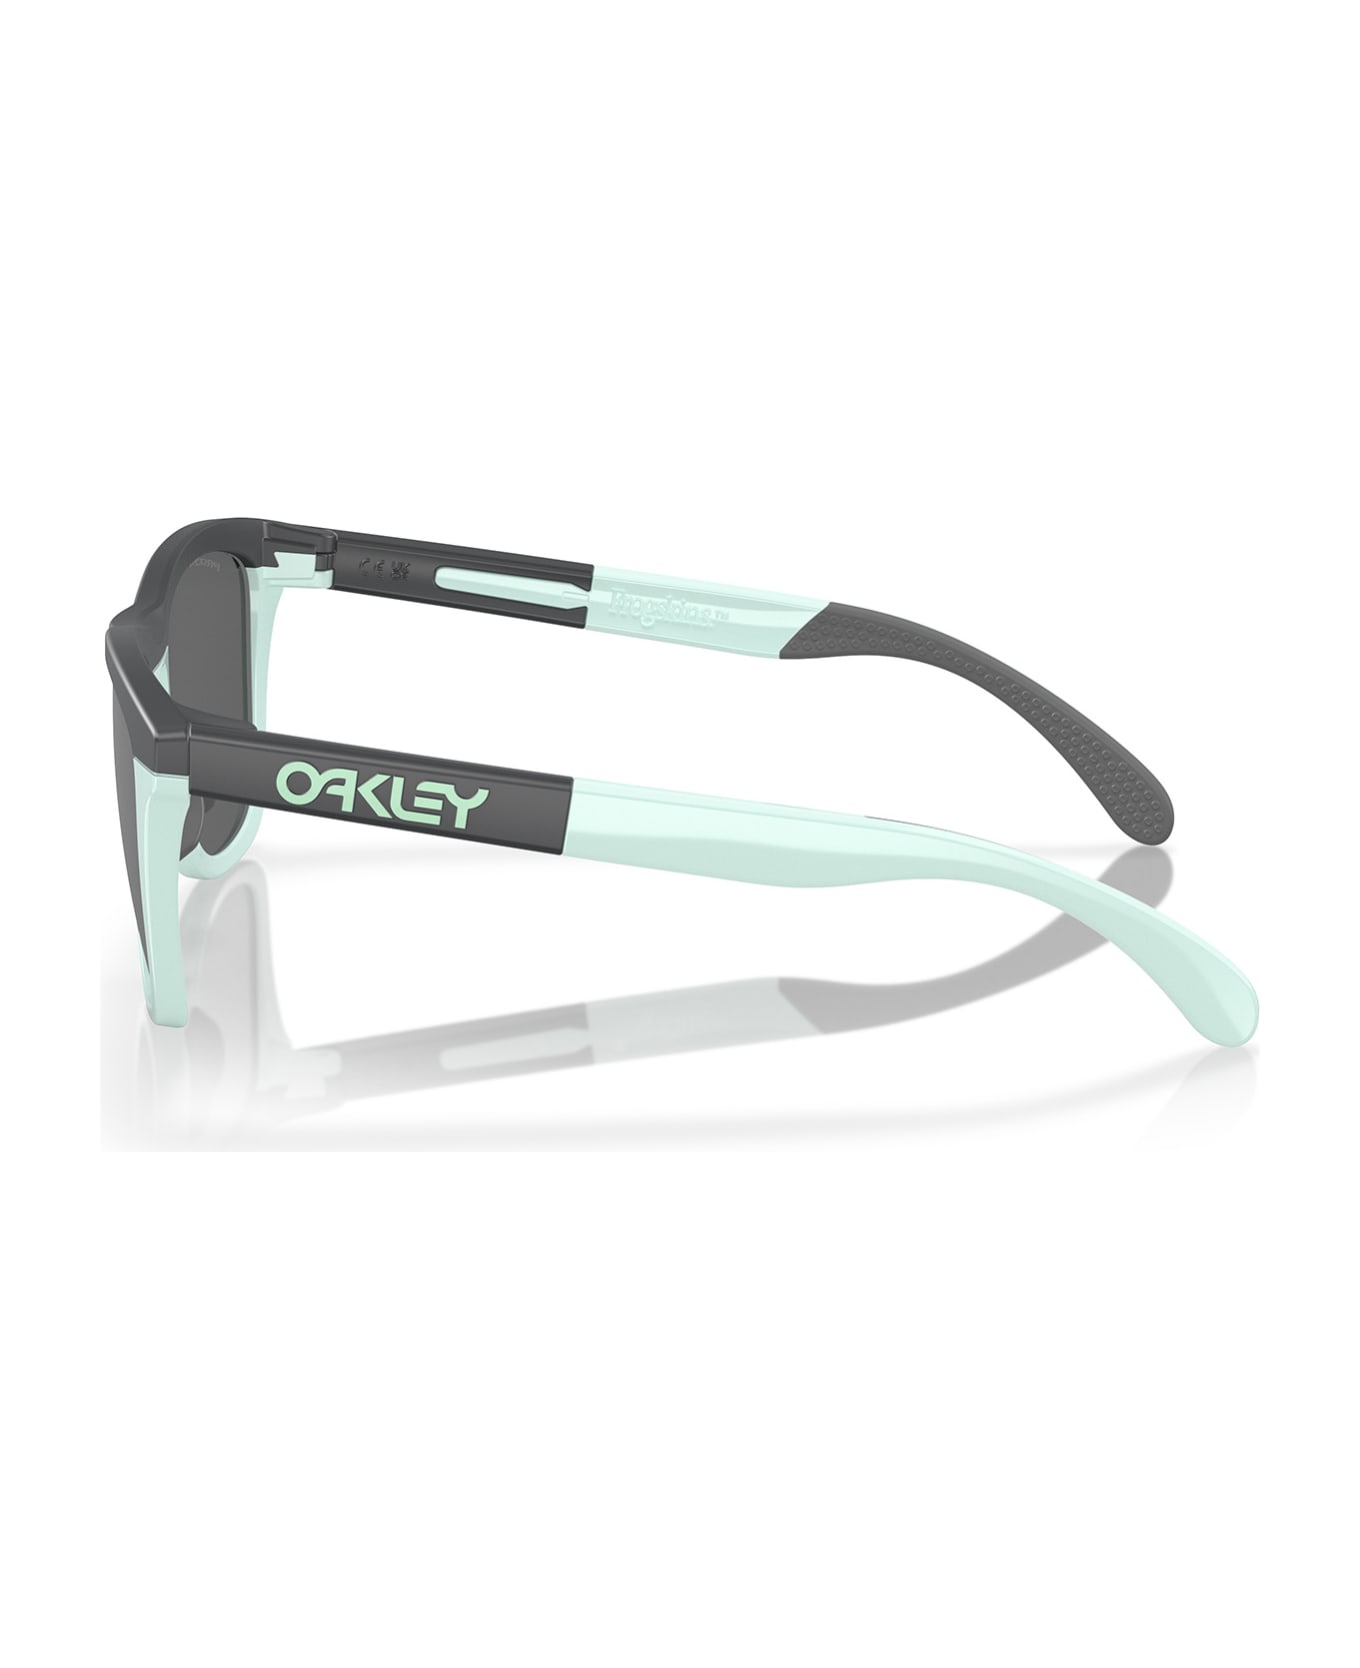 Oakley Oo9284 Matte Carbon / Blue Milkshake Sunglasses - Matte Carbon / Blue Milkshake サングラス